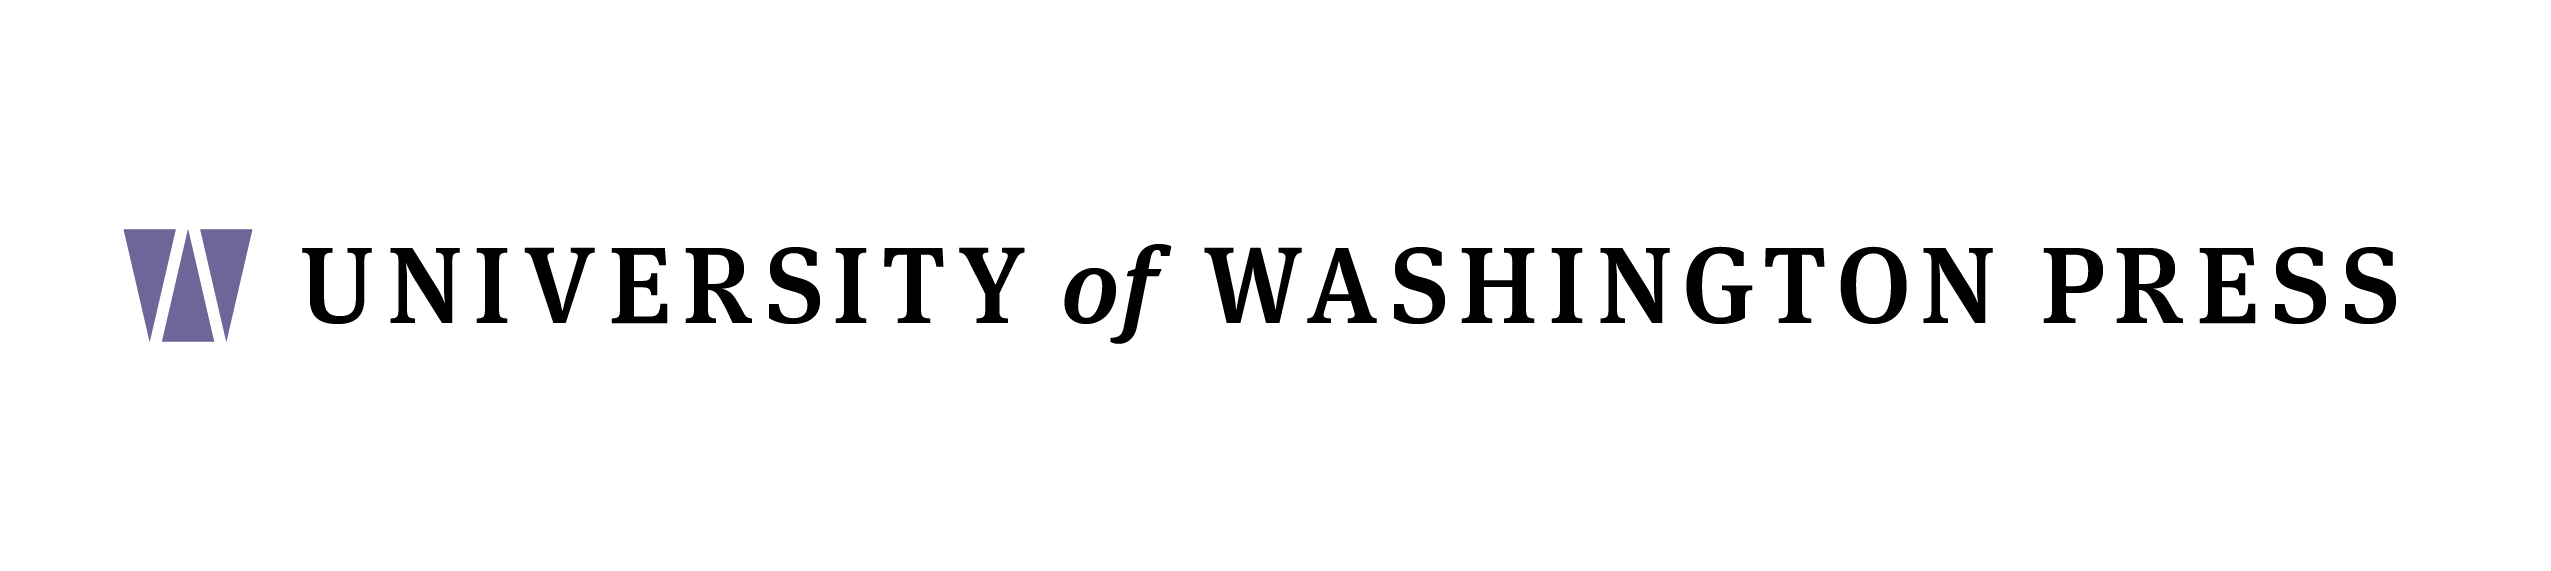 Black and White University of Washington Logo - UW Press joins UW Libraries. University of Washington Press Blog